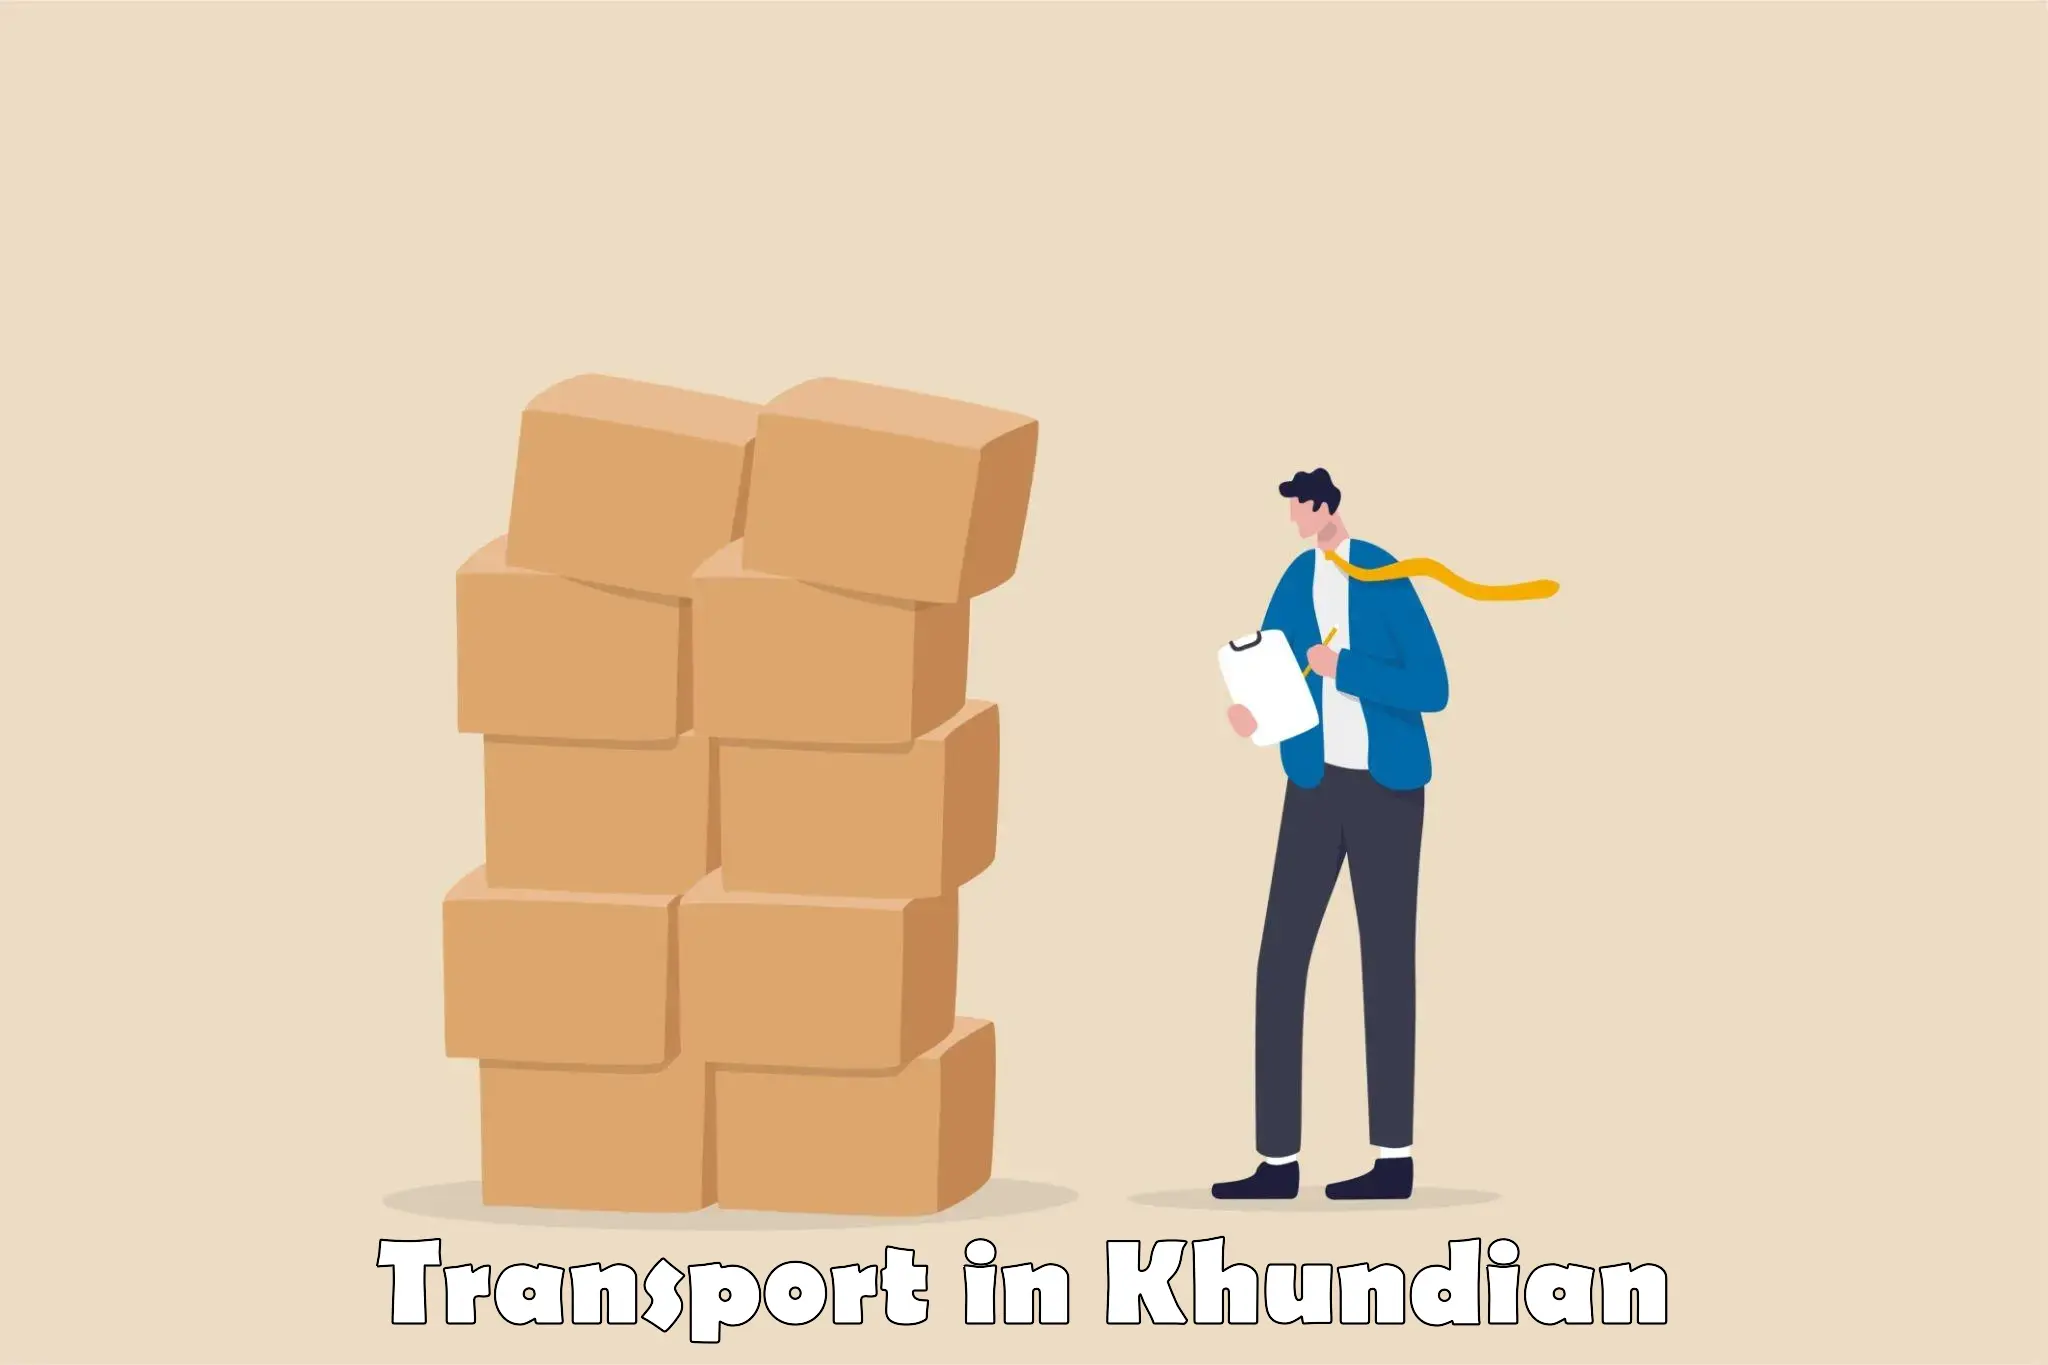 Intercity goods transport in Khundian